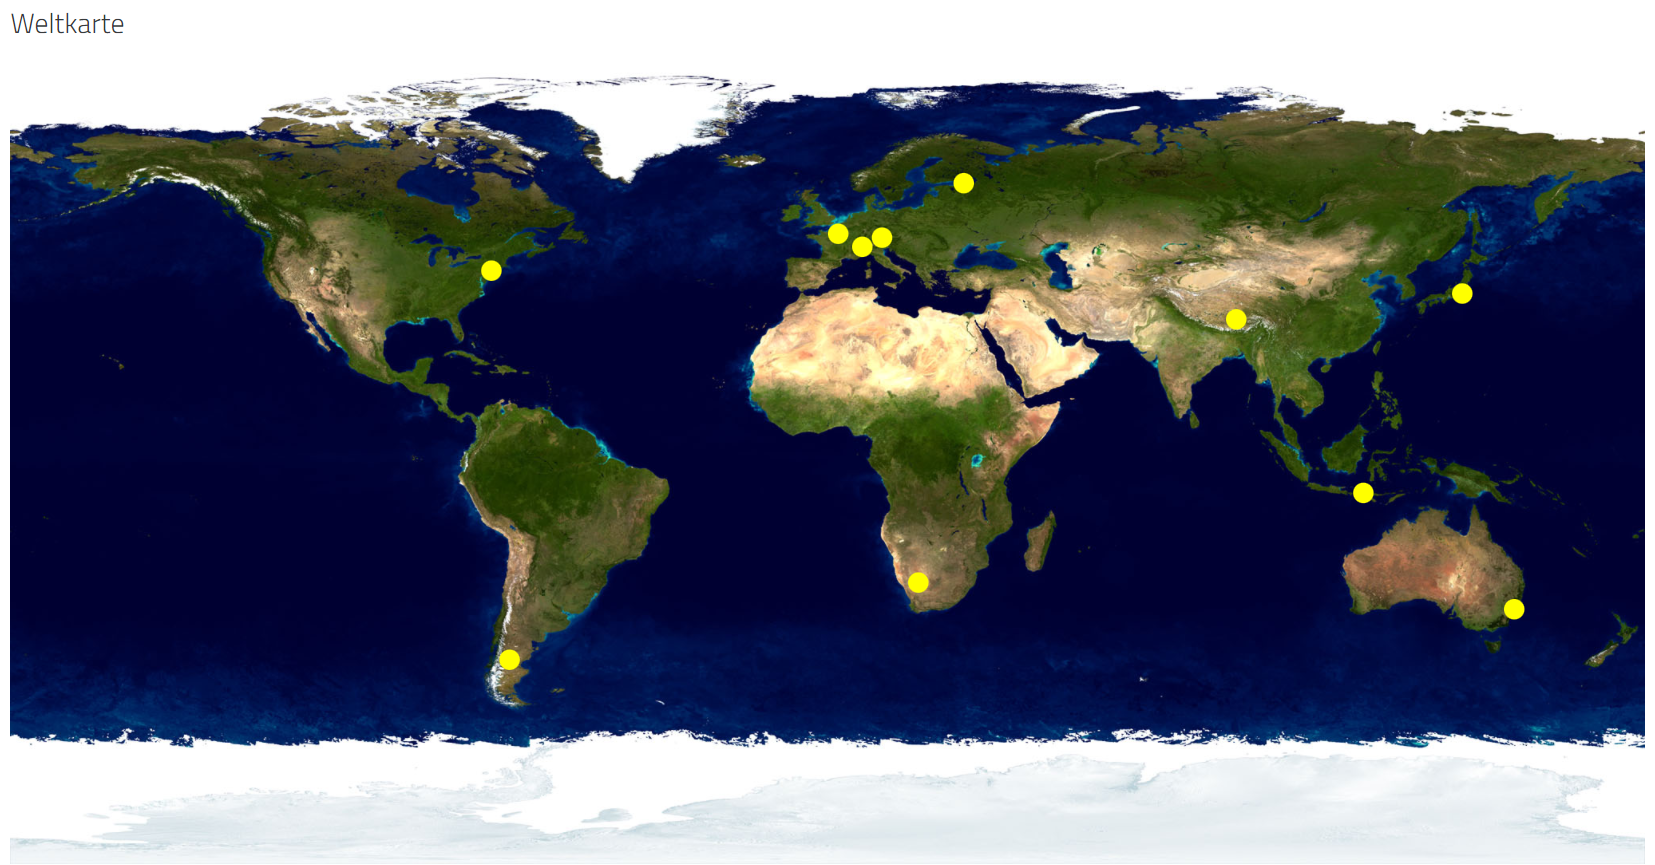 Moodle: Karte mit Geographischen Koordinaten (Datenbankvorlage)